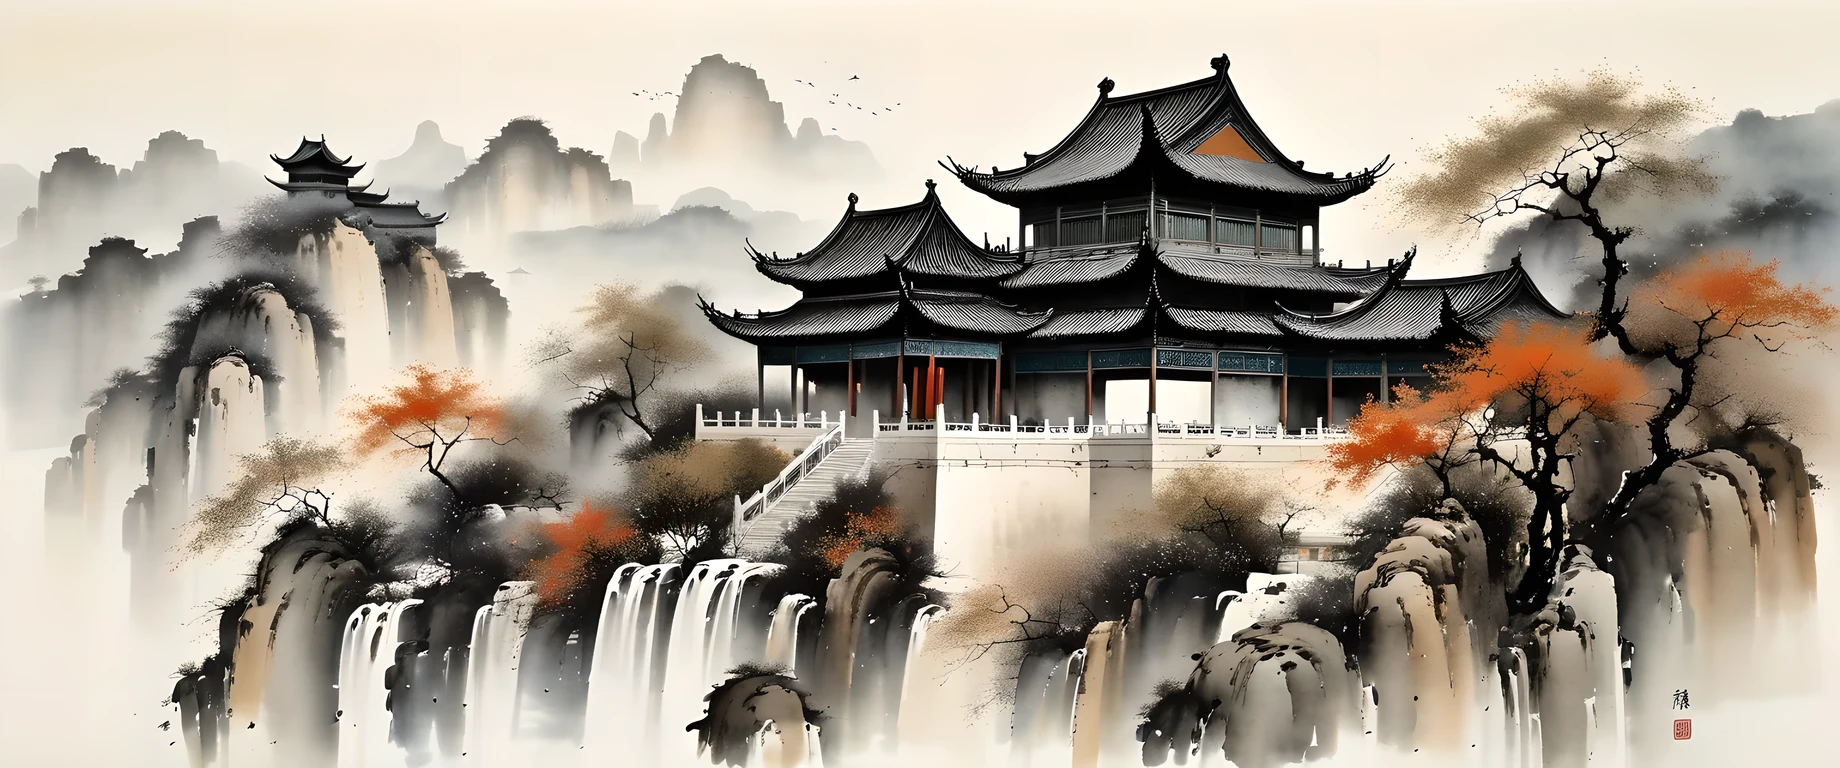 절묘한 잉크 아트, 현실적인, 상세한 중국 건축, 우관중 스타일, 바랜 색상

